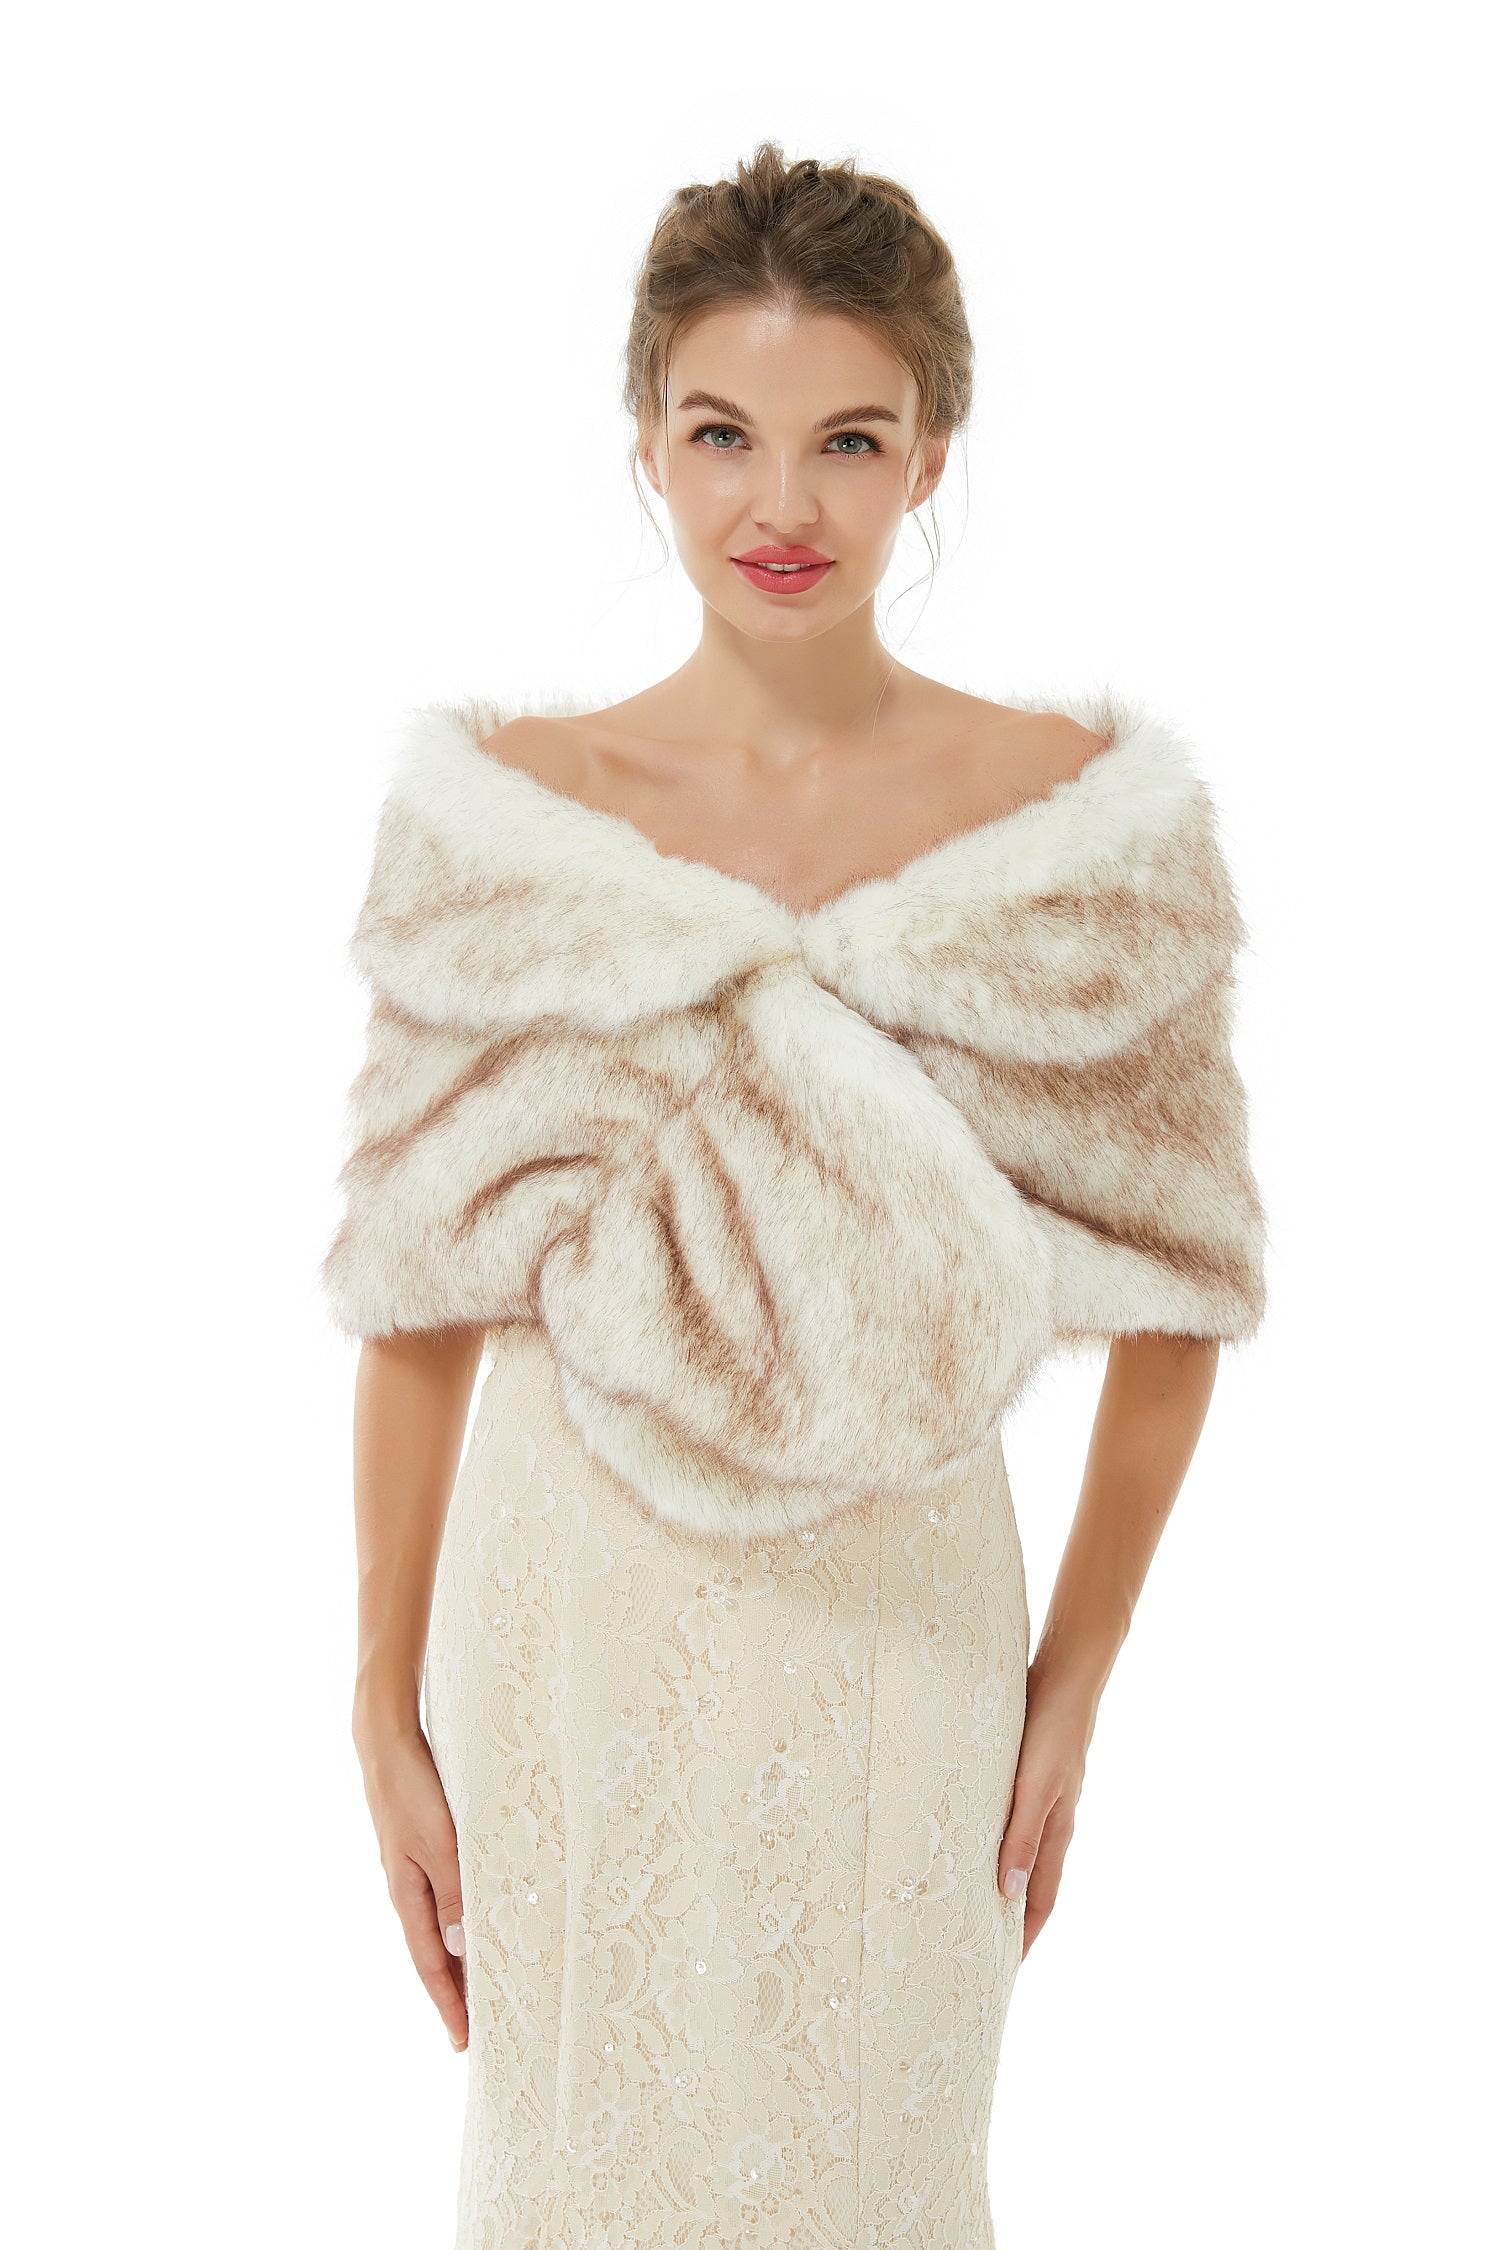 Luluslly Faux Fur Wrap Women Shawl for Weddings